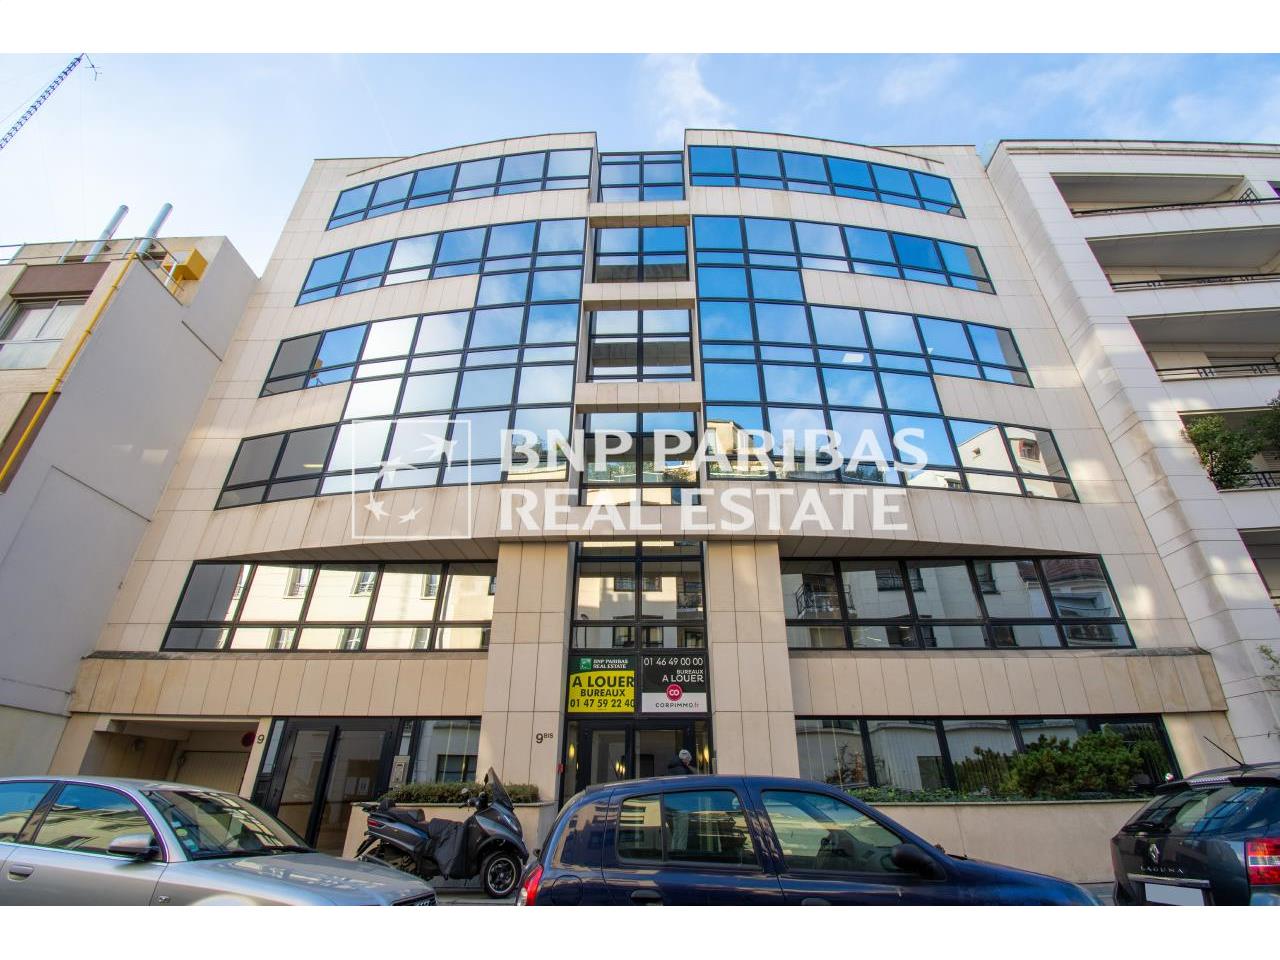 Location bureau Boulogne-Billancourt 379m²